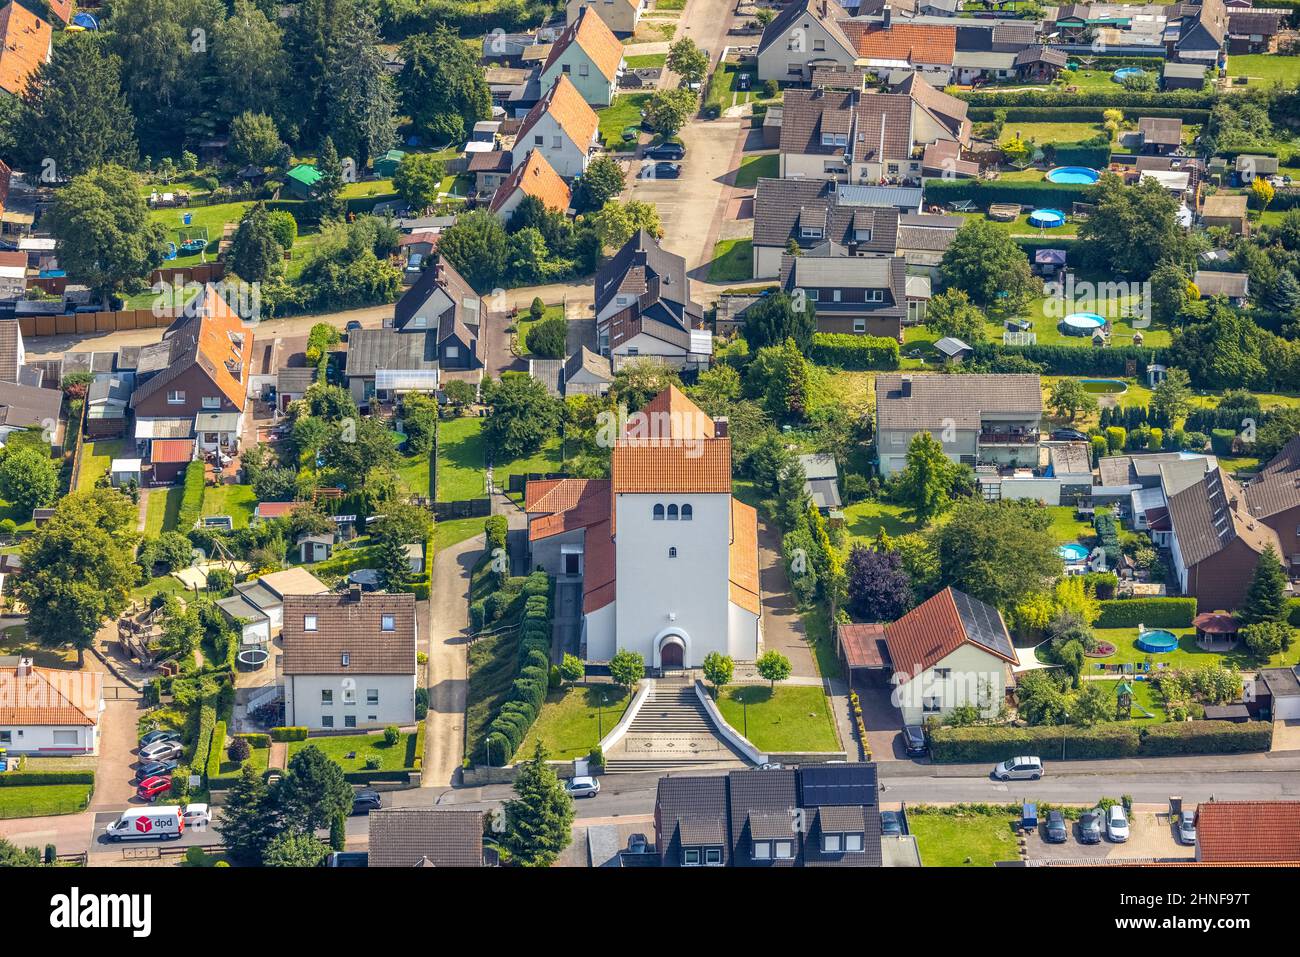 Foto aerea, Chiesa di Cristo a König Bönen, zona della Ruhr, Renania settentrionale-Vestfalia, Germania, luogo di culto, Bönen, DE, Europa, comunità religiosa, plac Foto Stock